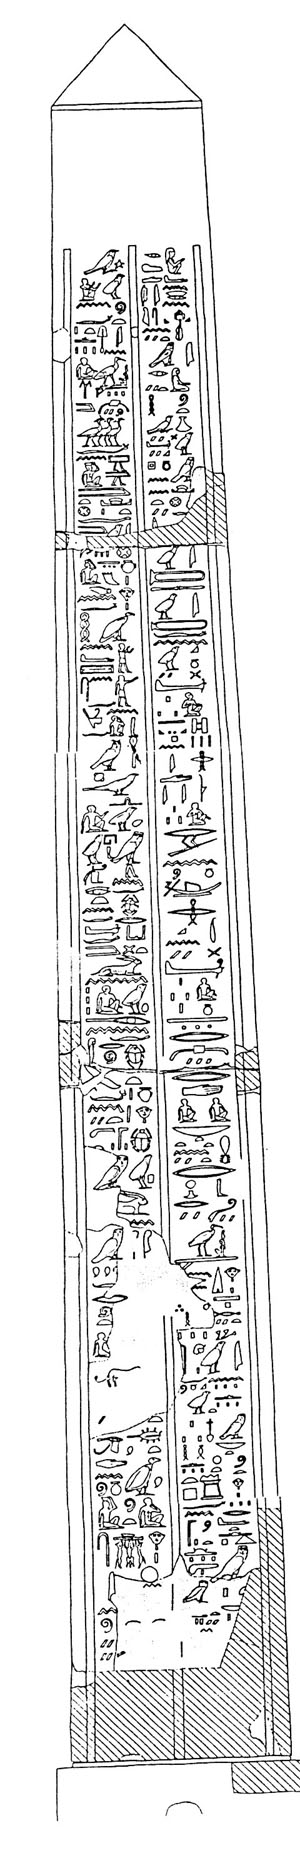 Hiroglyphes d'une face de l'oblisque